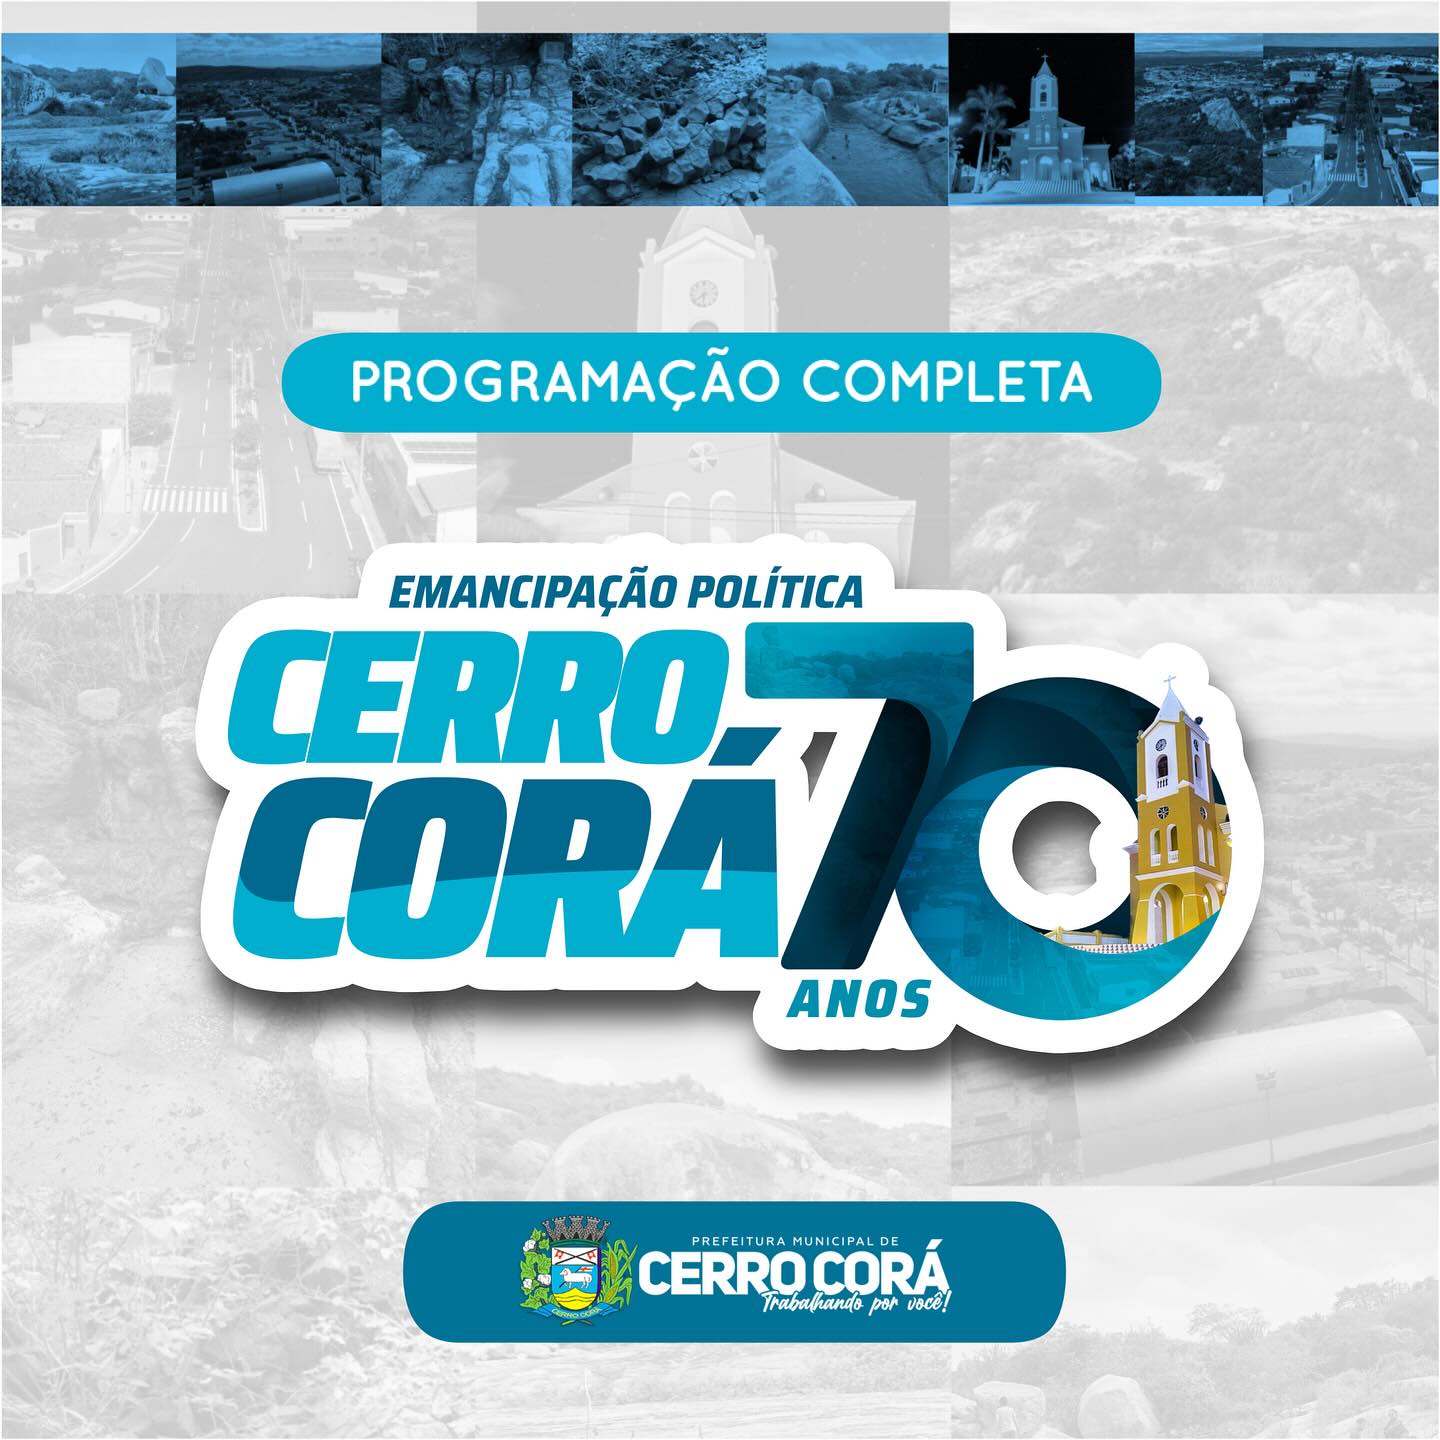 PROGRAMAÇÃO DAS COMEMORAÇÕES DOS 70 ANOS DE EMANCIPAÇÃO POLITICA DE CERRO CORÁ-RN